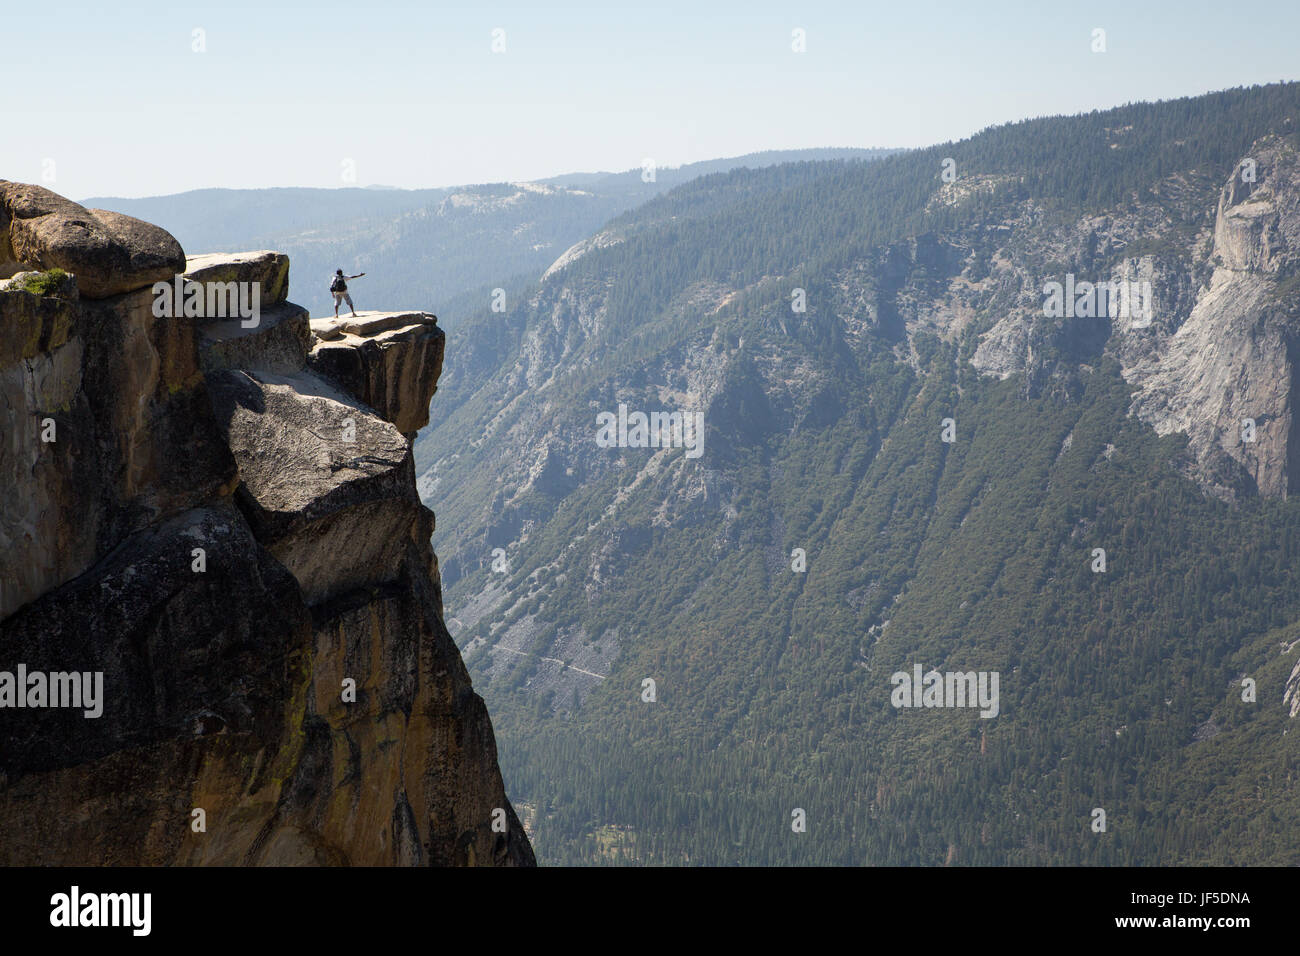 Ein Besucher zum Yosemite National Park steht auf einem Felsvorsprung am Taft Point. Diese Kante, auf einer Höhe von etwa 7.500 Fuß steht Tausende von Füßen über dem Yosemite Tal. Stockfoto